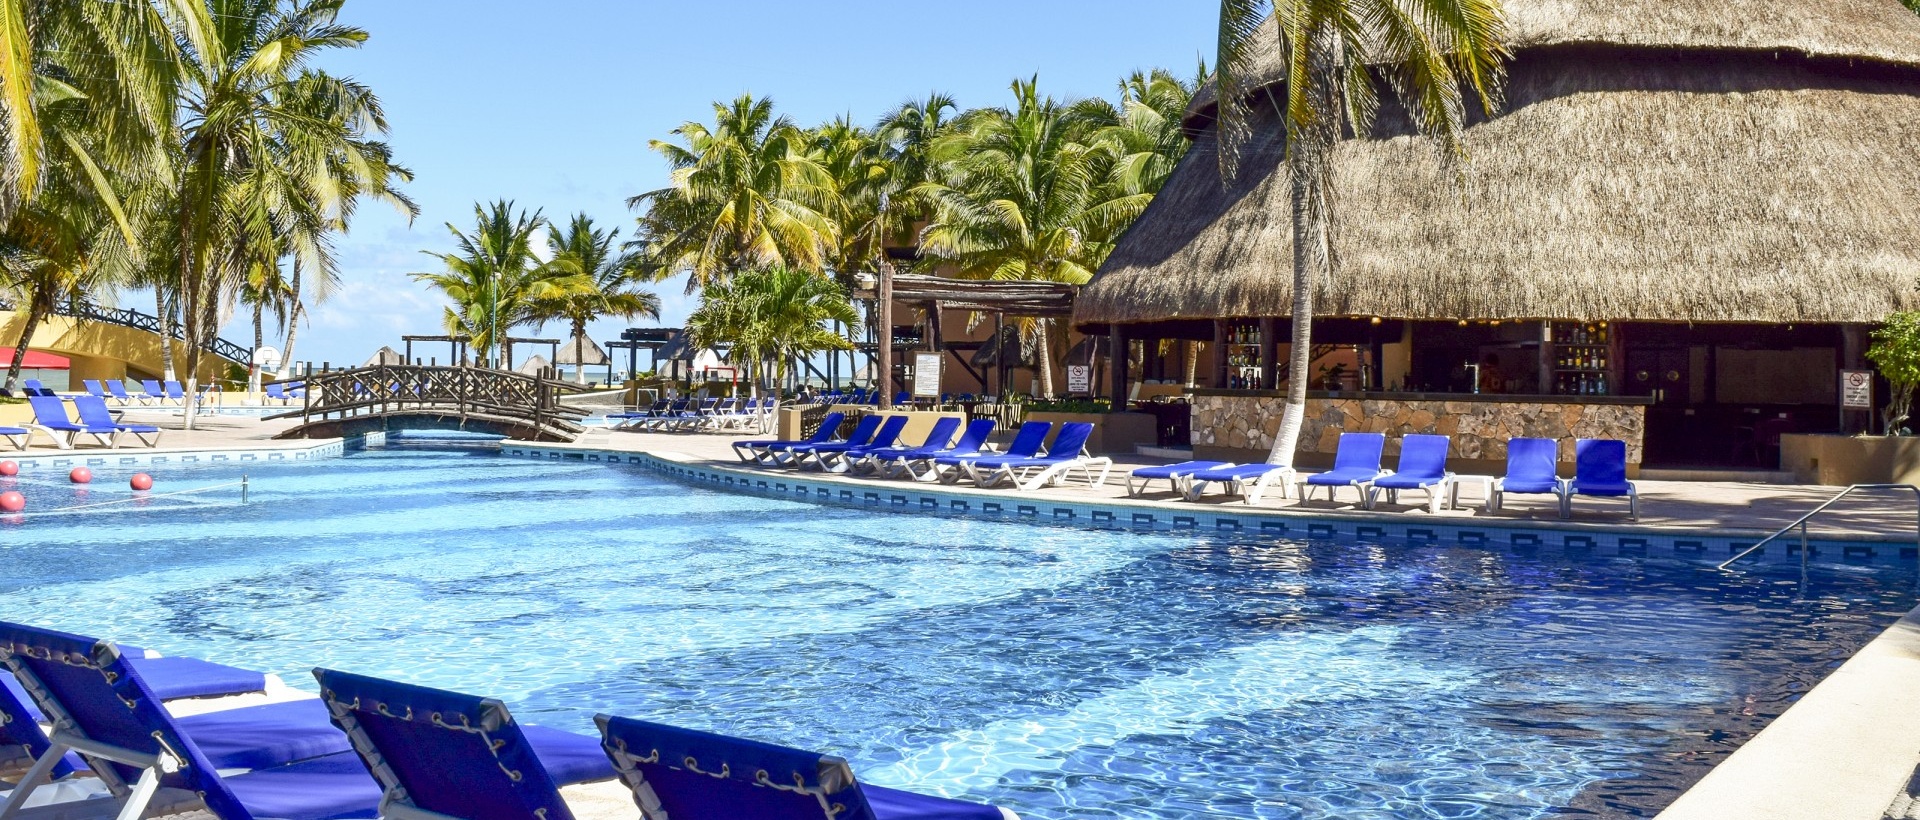 Hotel - Hotel Reef Yucatan - Telchac Puerto - México